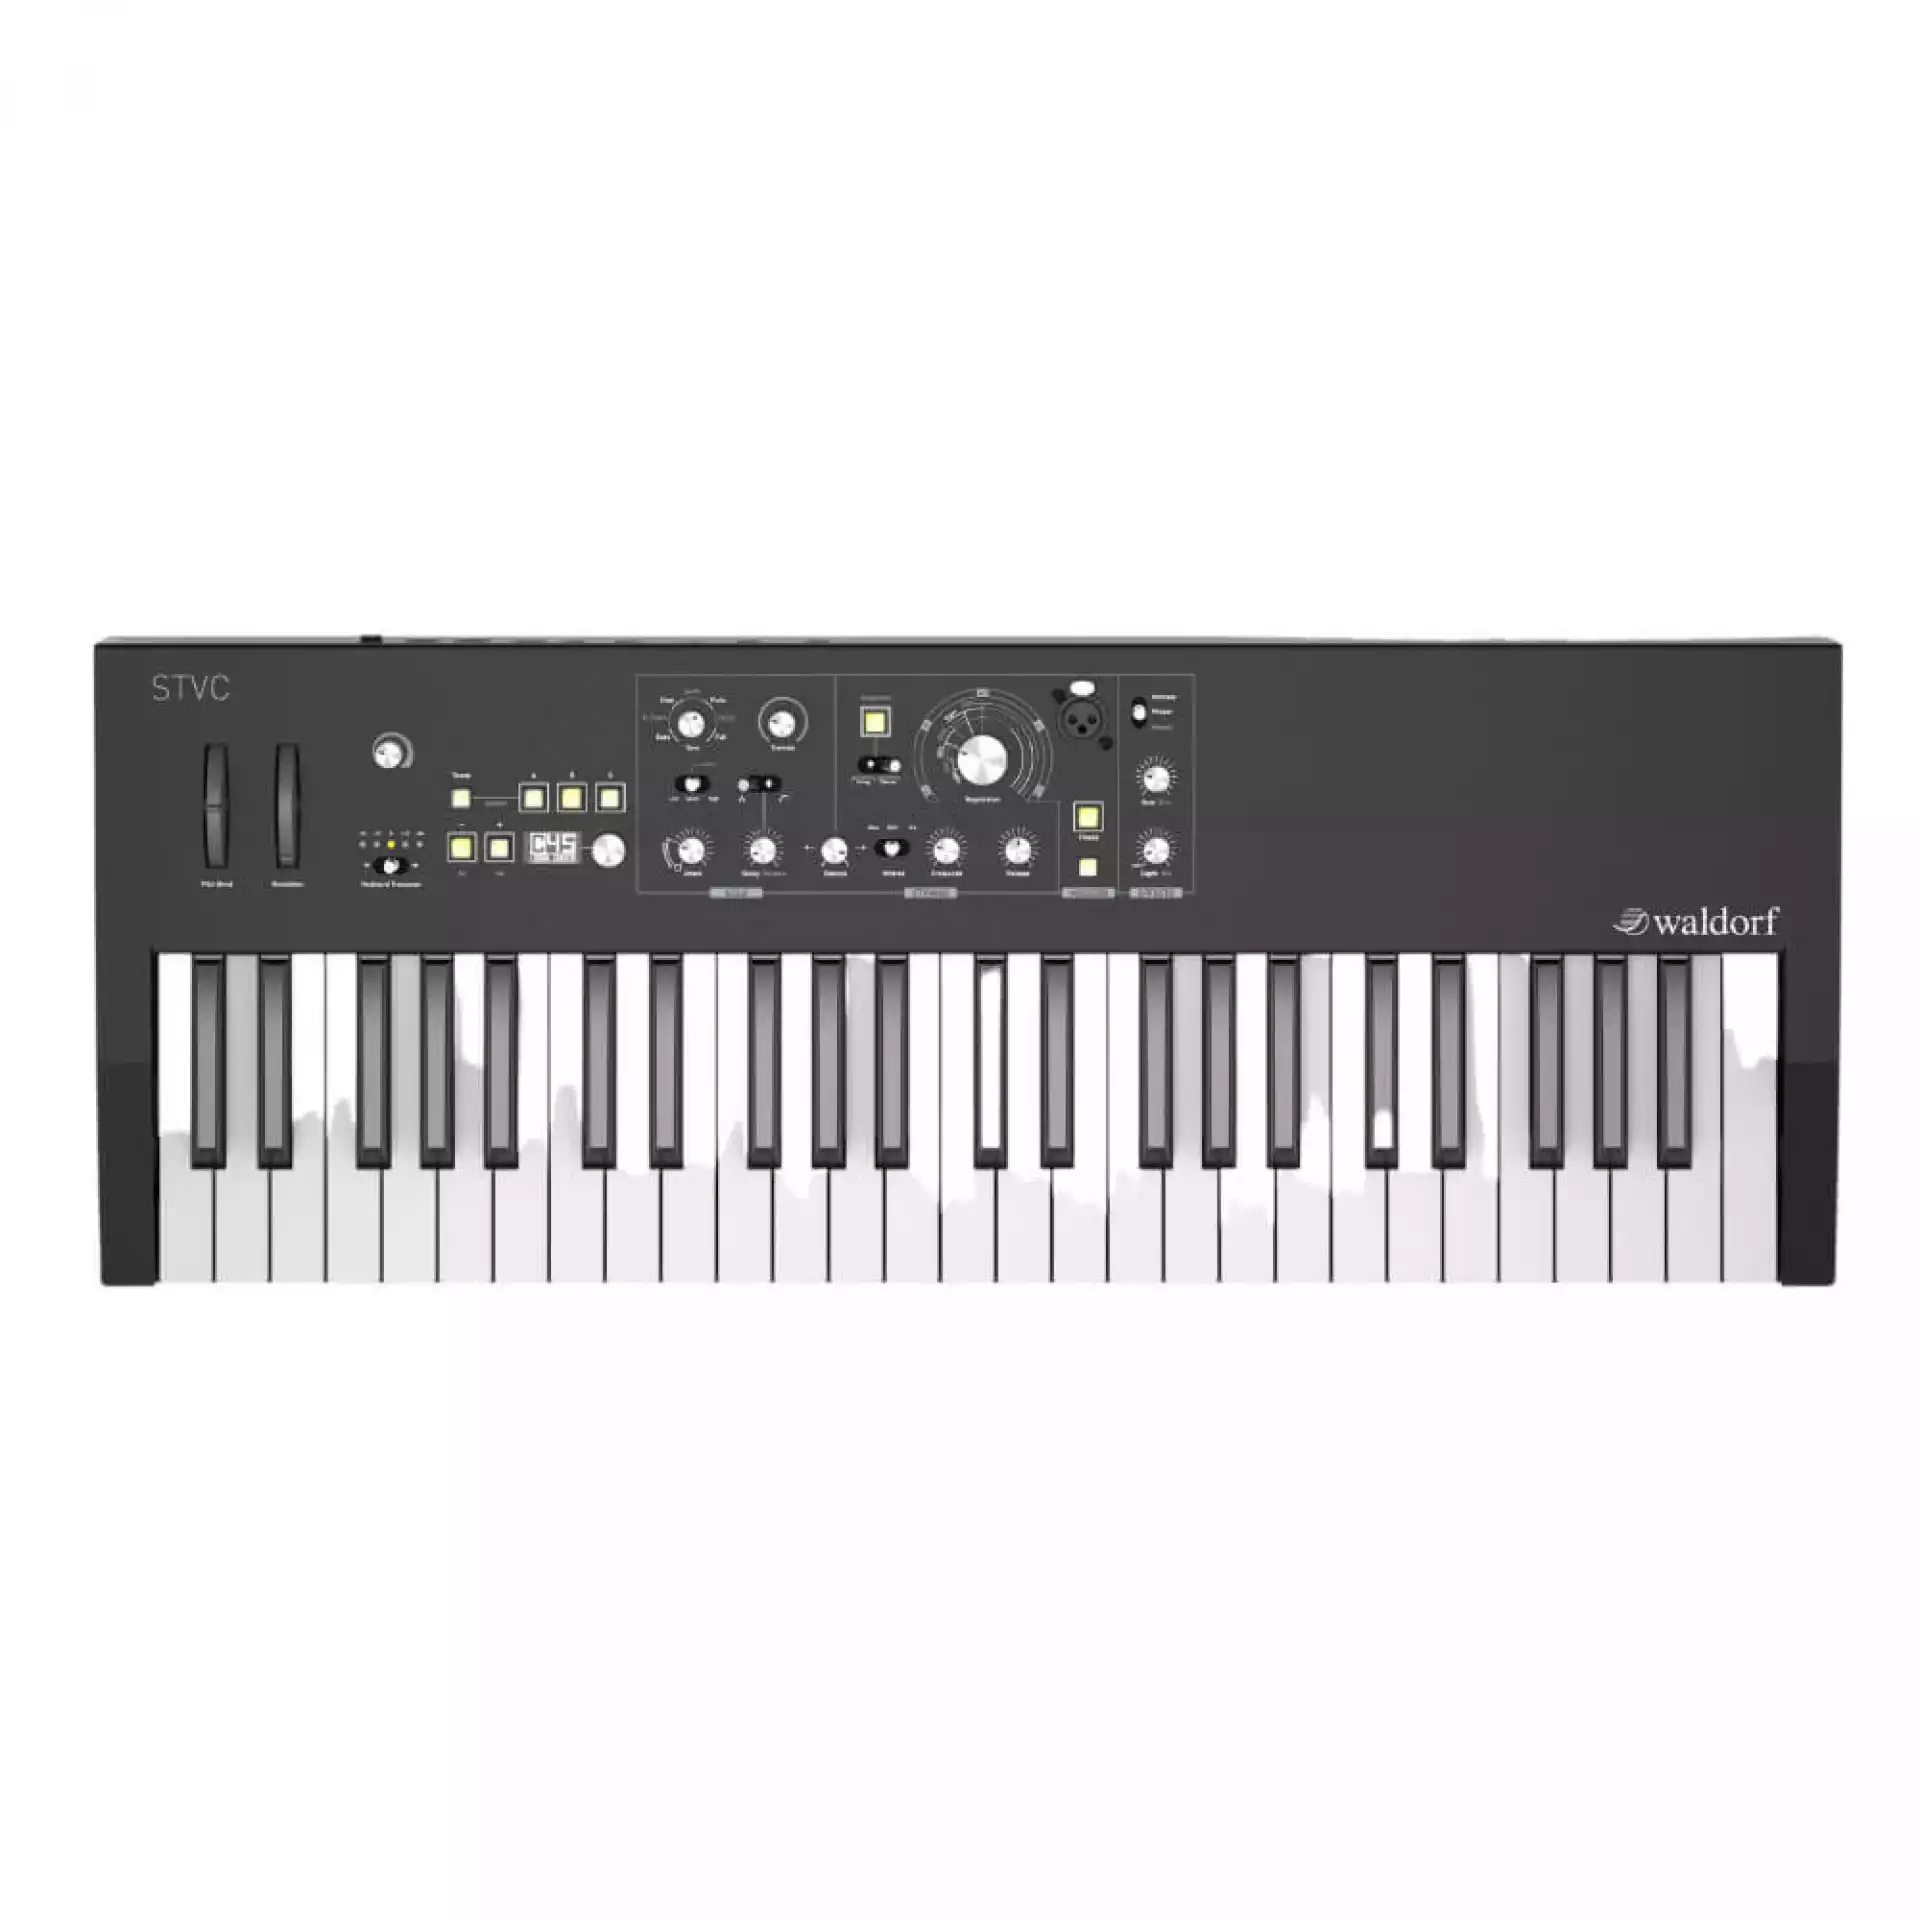 Waldorf STVC Keyboard - Sintisajzer